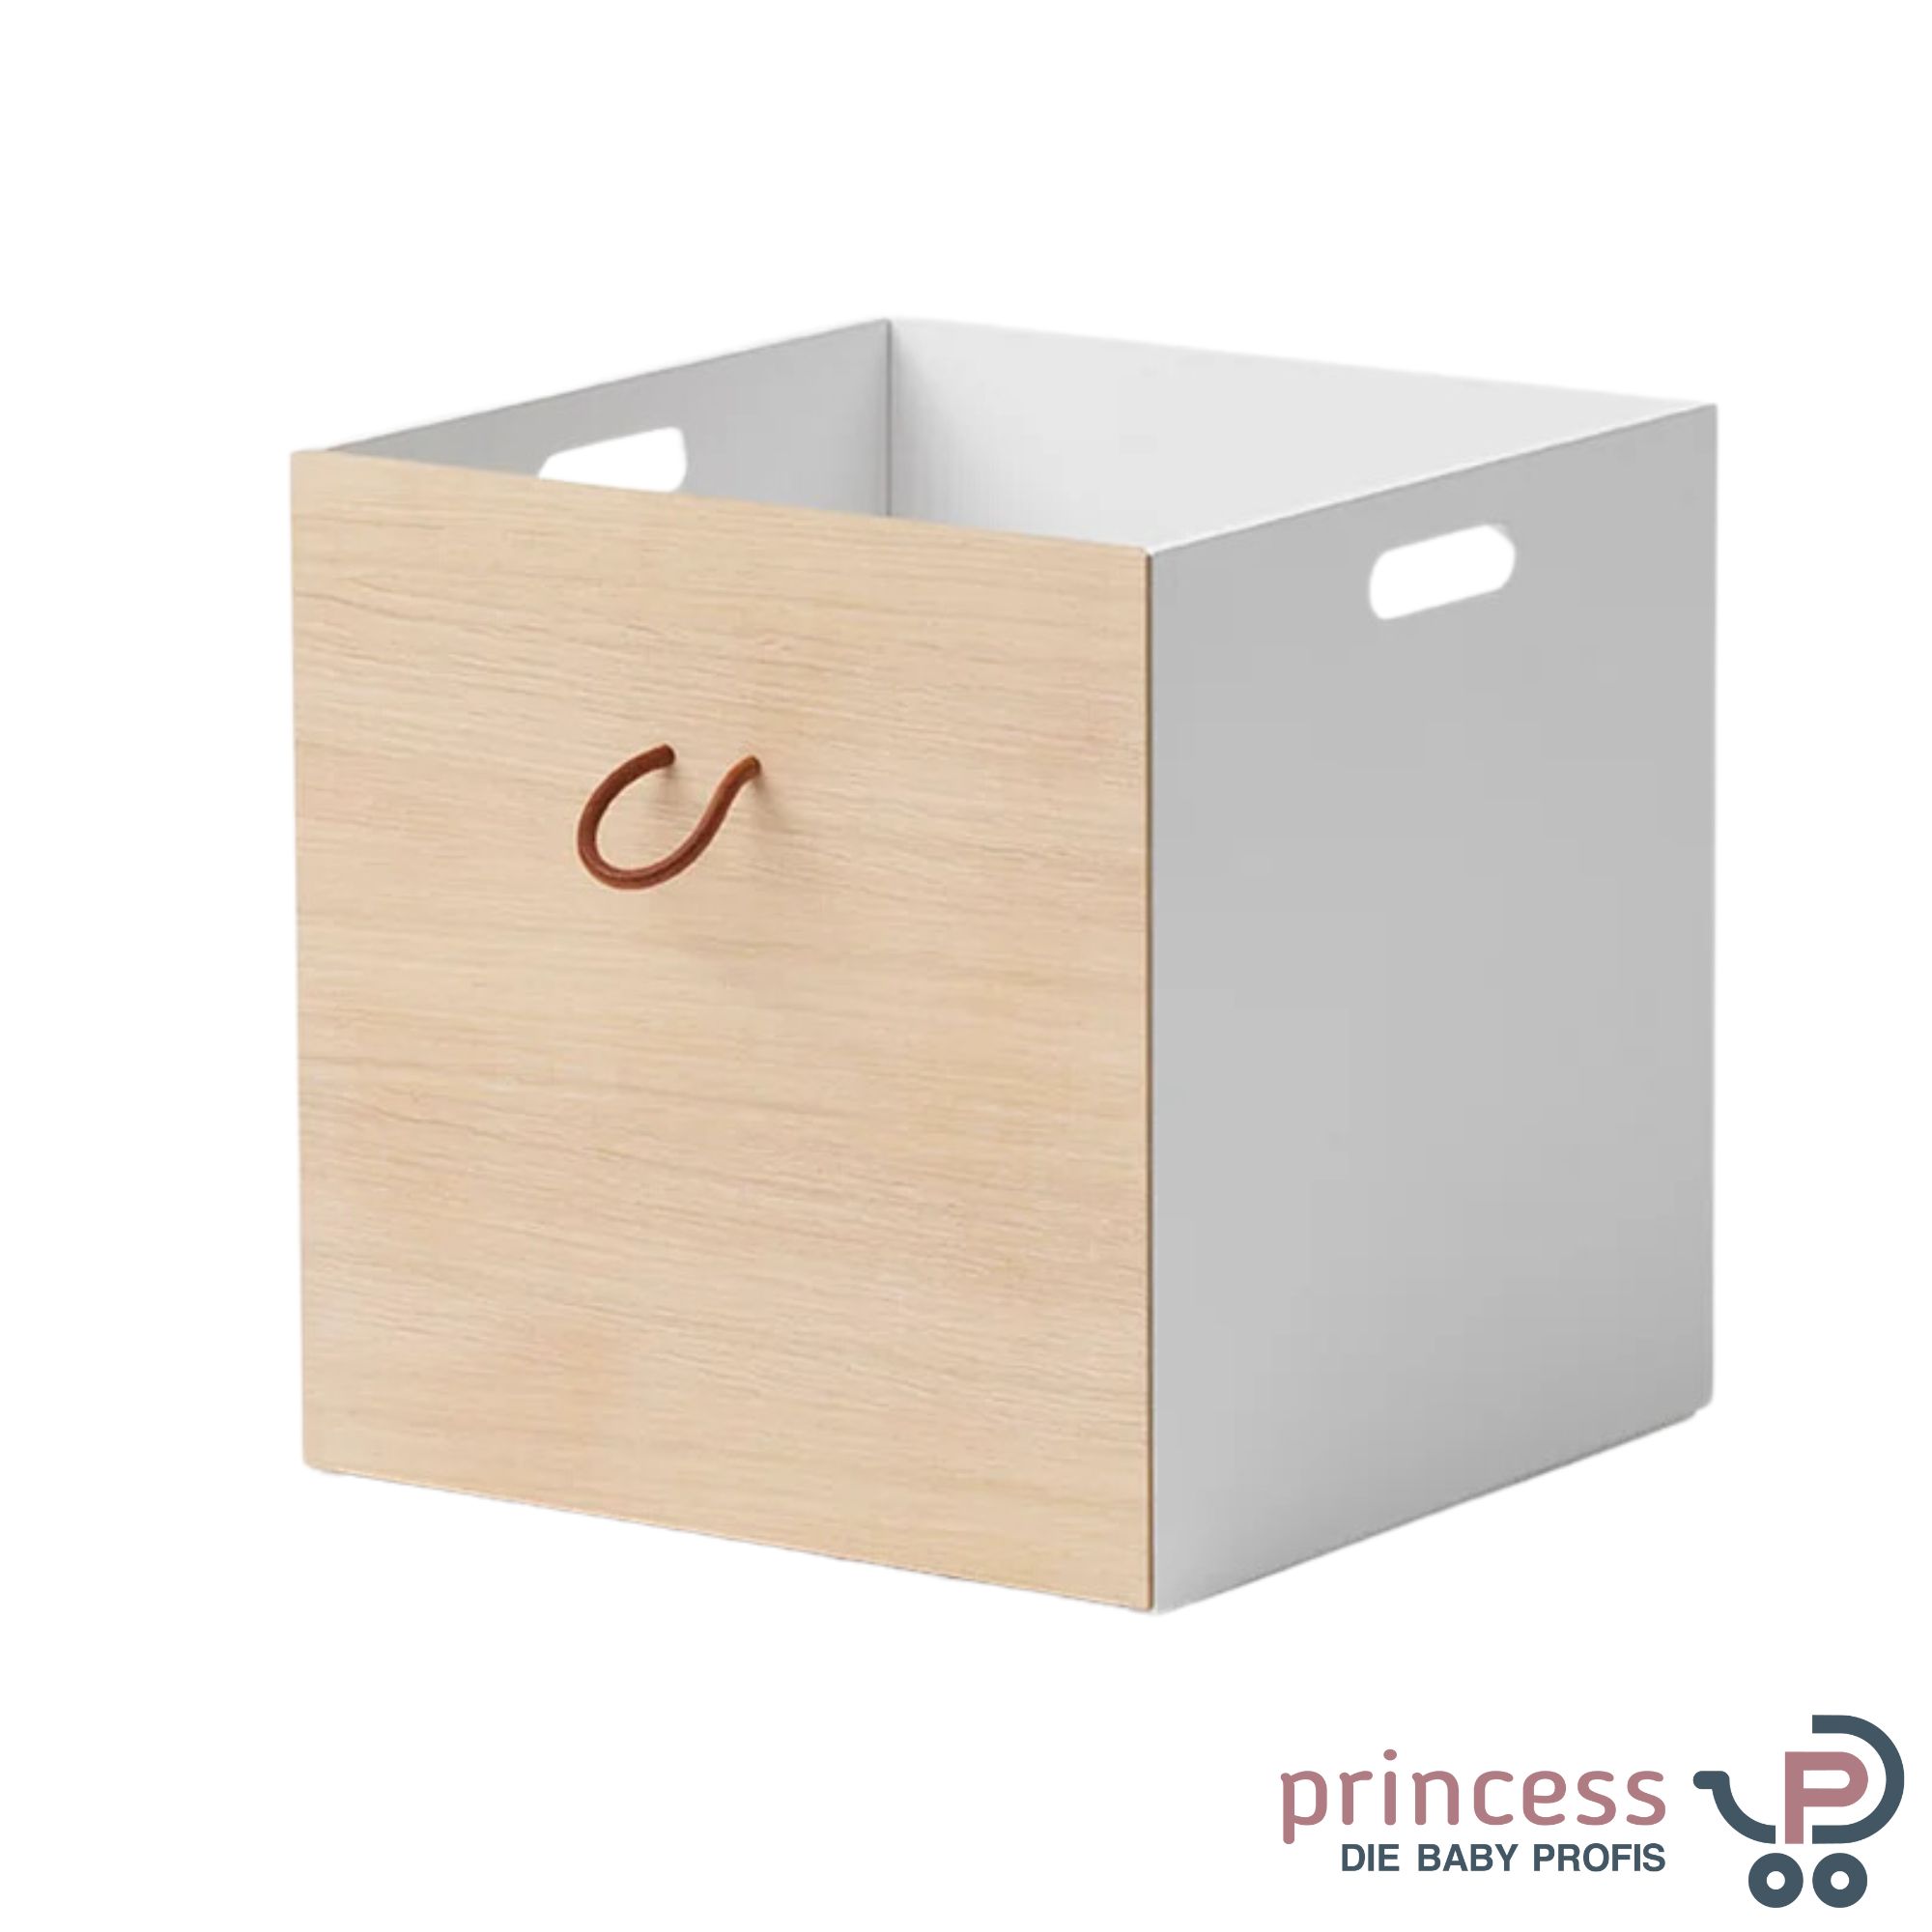 Oliver furniture Kisten für Wood Regale, Weiss /Eiche - Princess